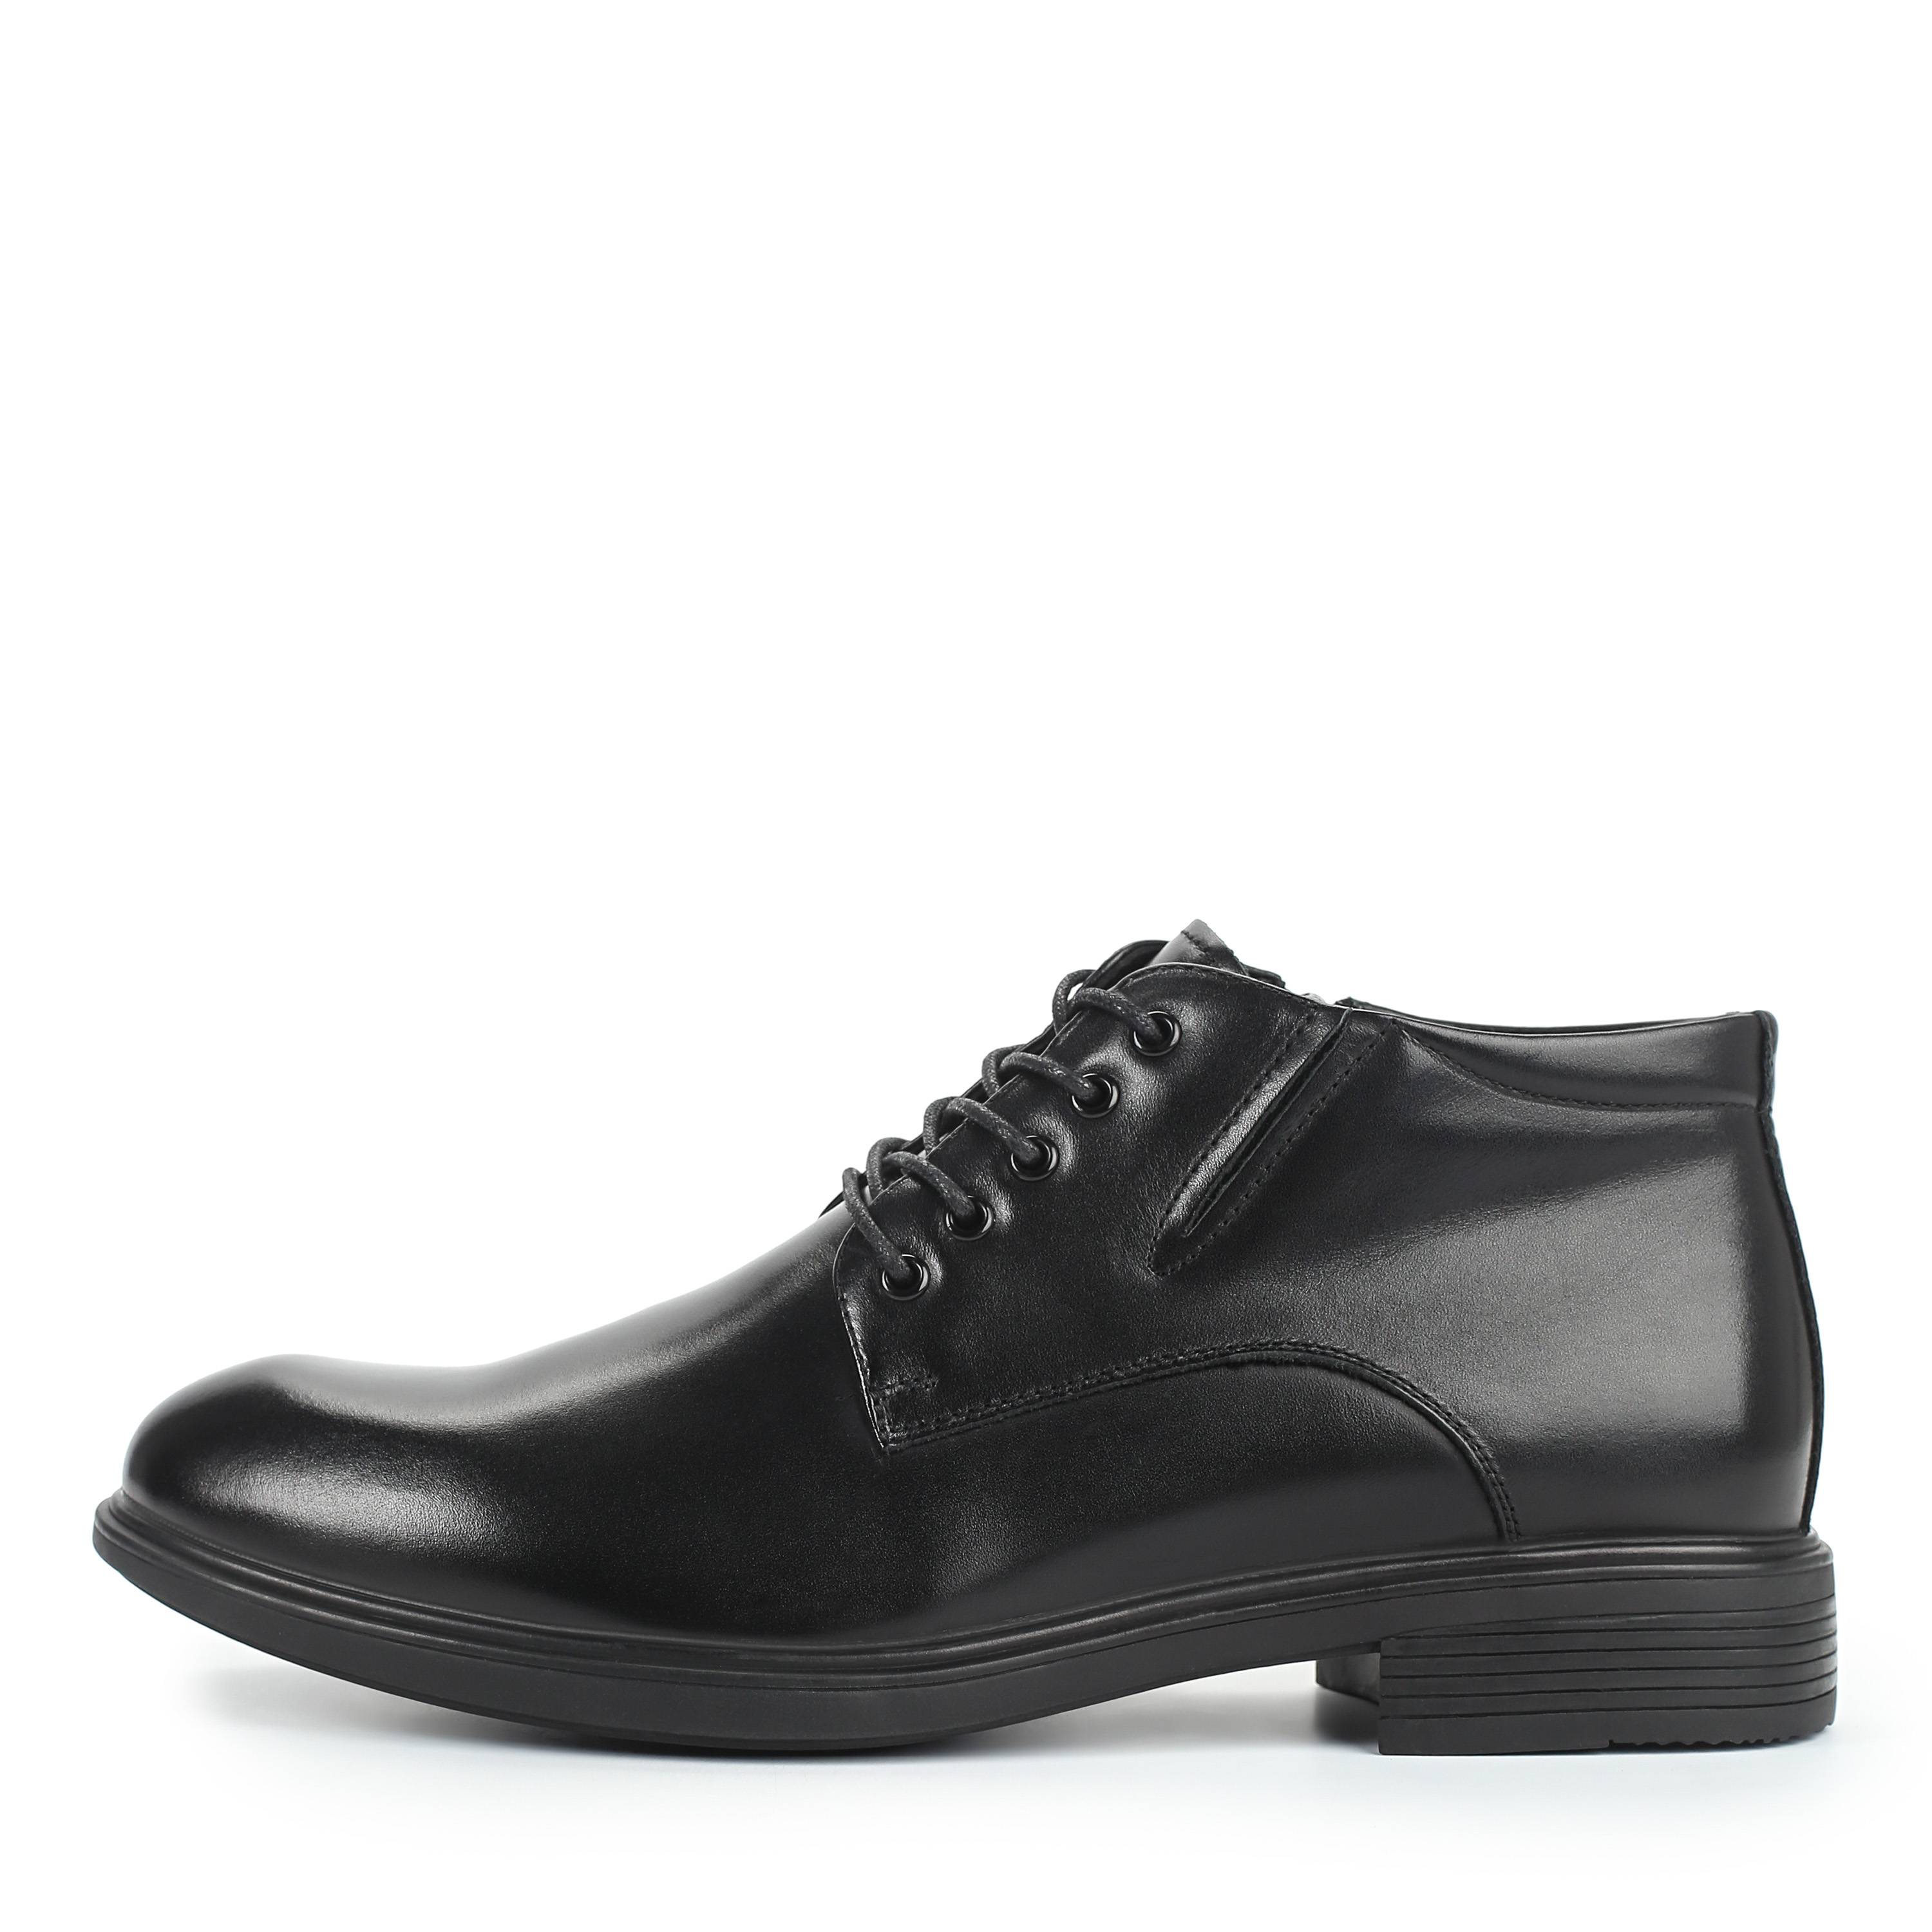 Ботинки Thomas Munz 73-080B-2101, цвет черный, размер 40 дерби - фото 1